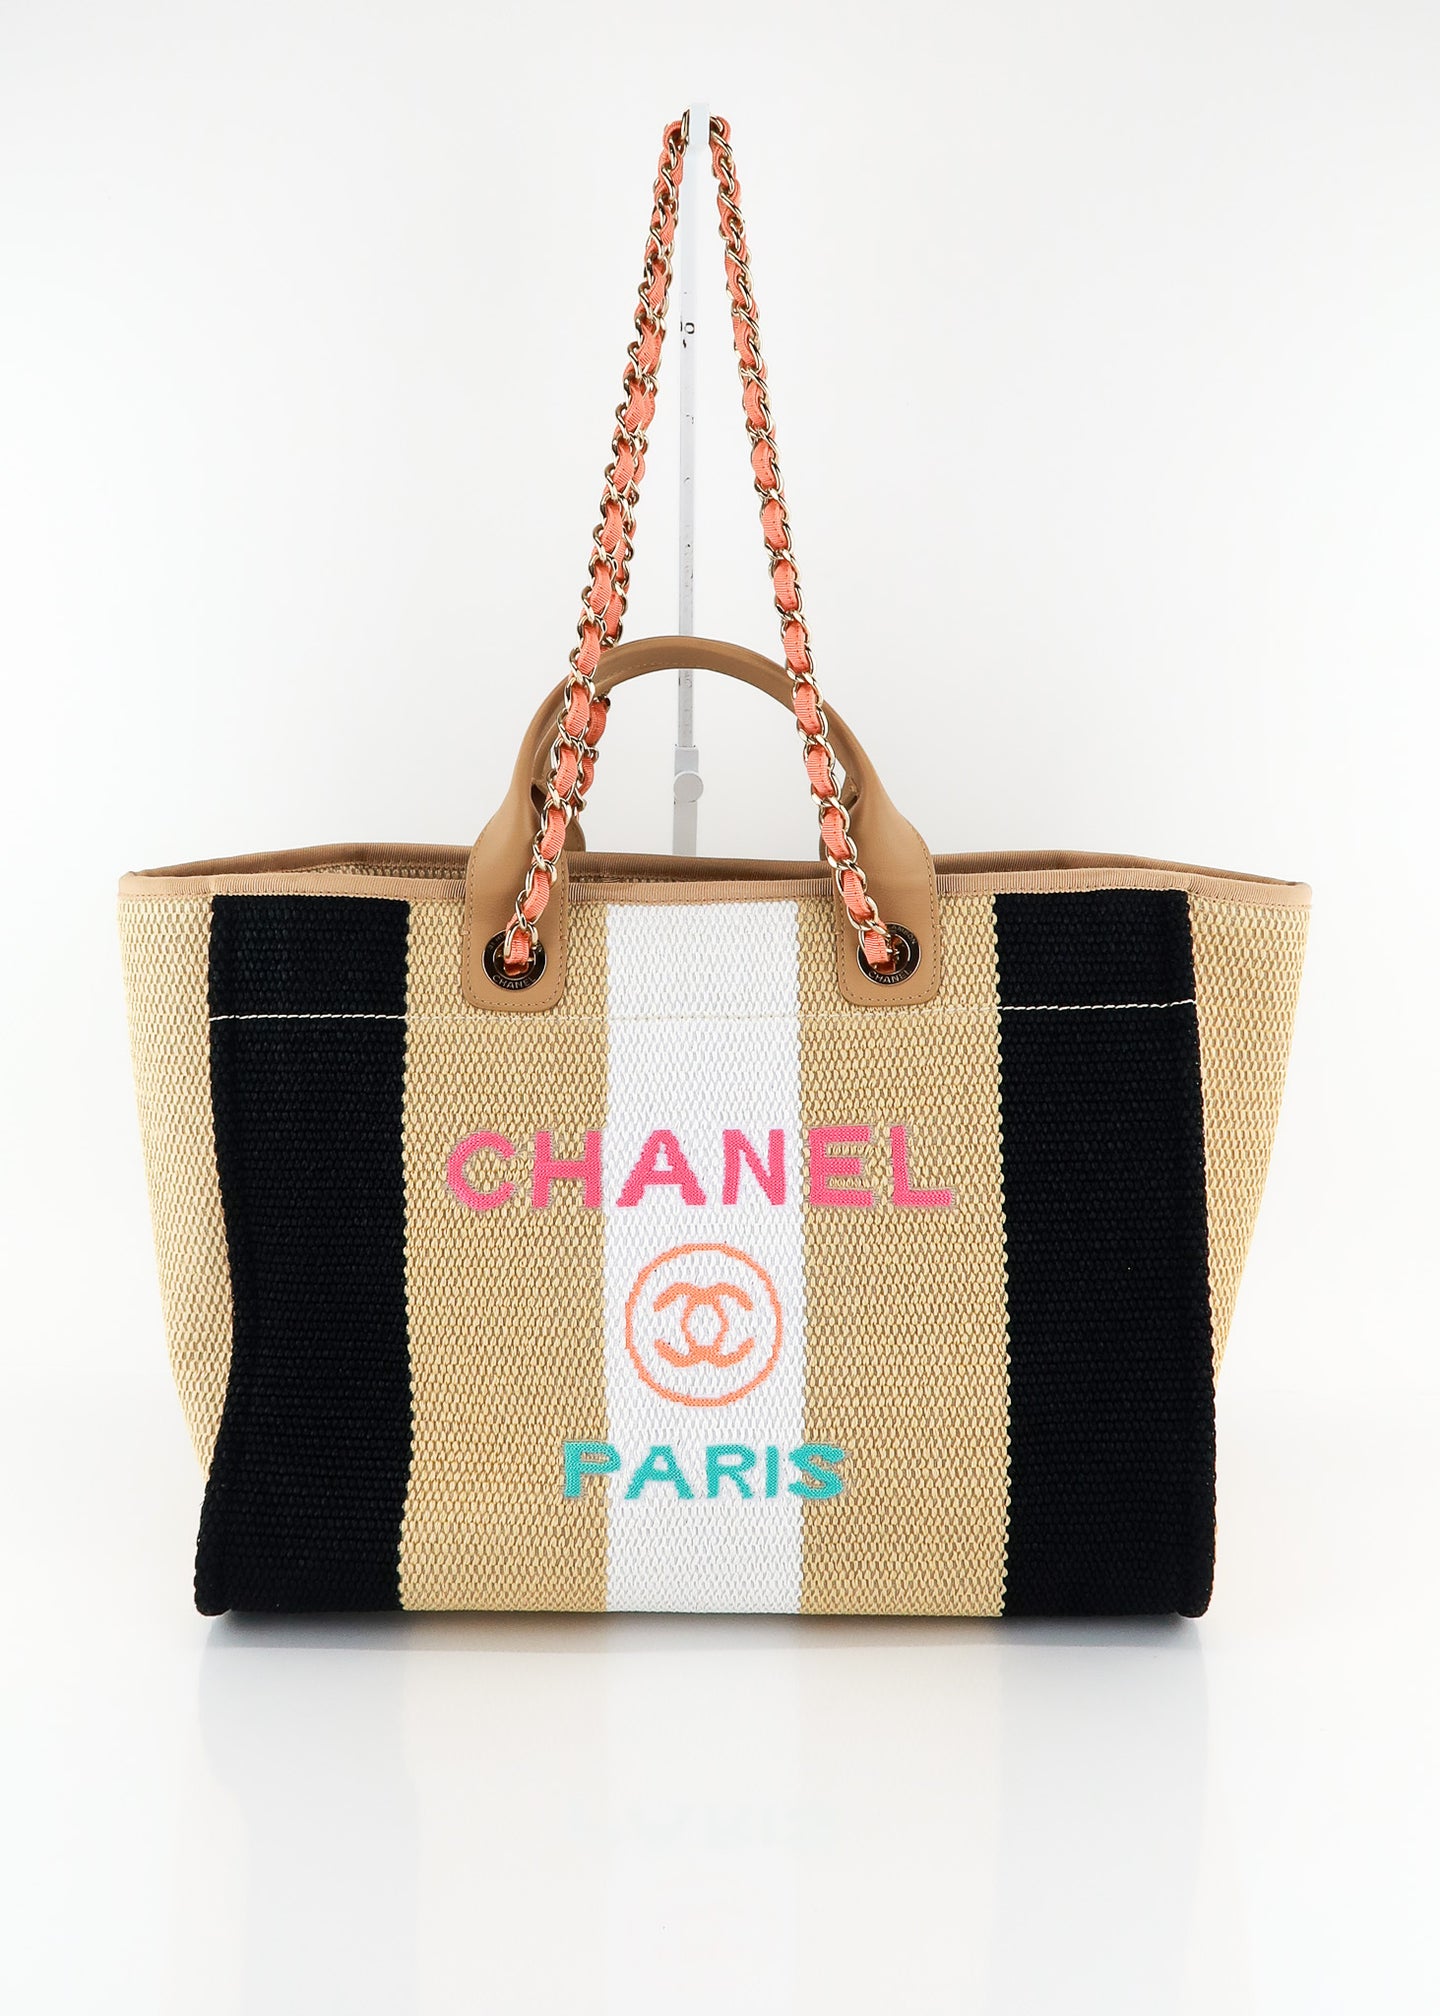 Chanel Grey Woven Straw Raffia Medium Deauville Tote Chanel